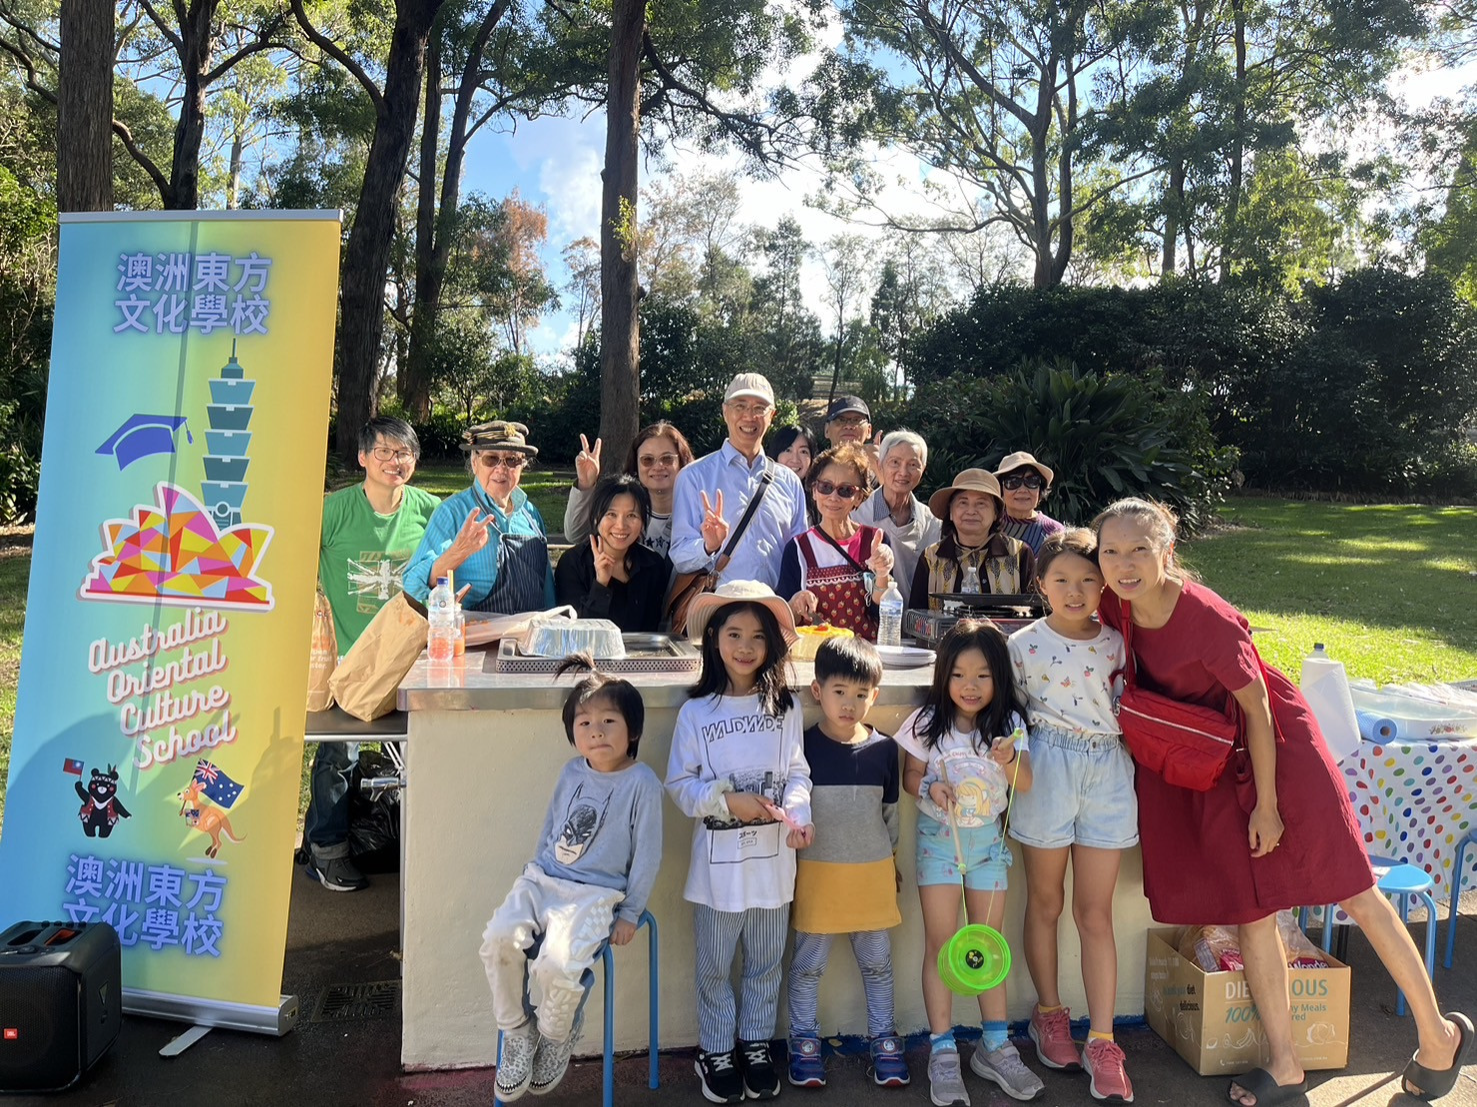 澳洲東方文化學校舉辦親子童樂文化活動 家長孩童共度愉快時光